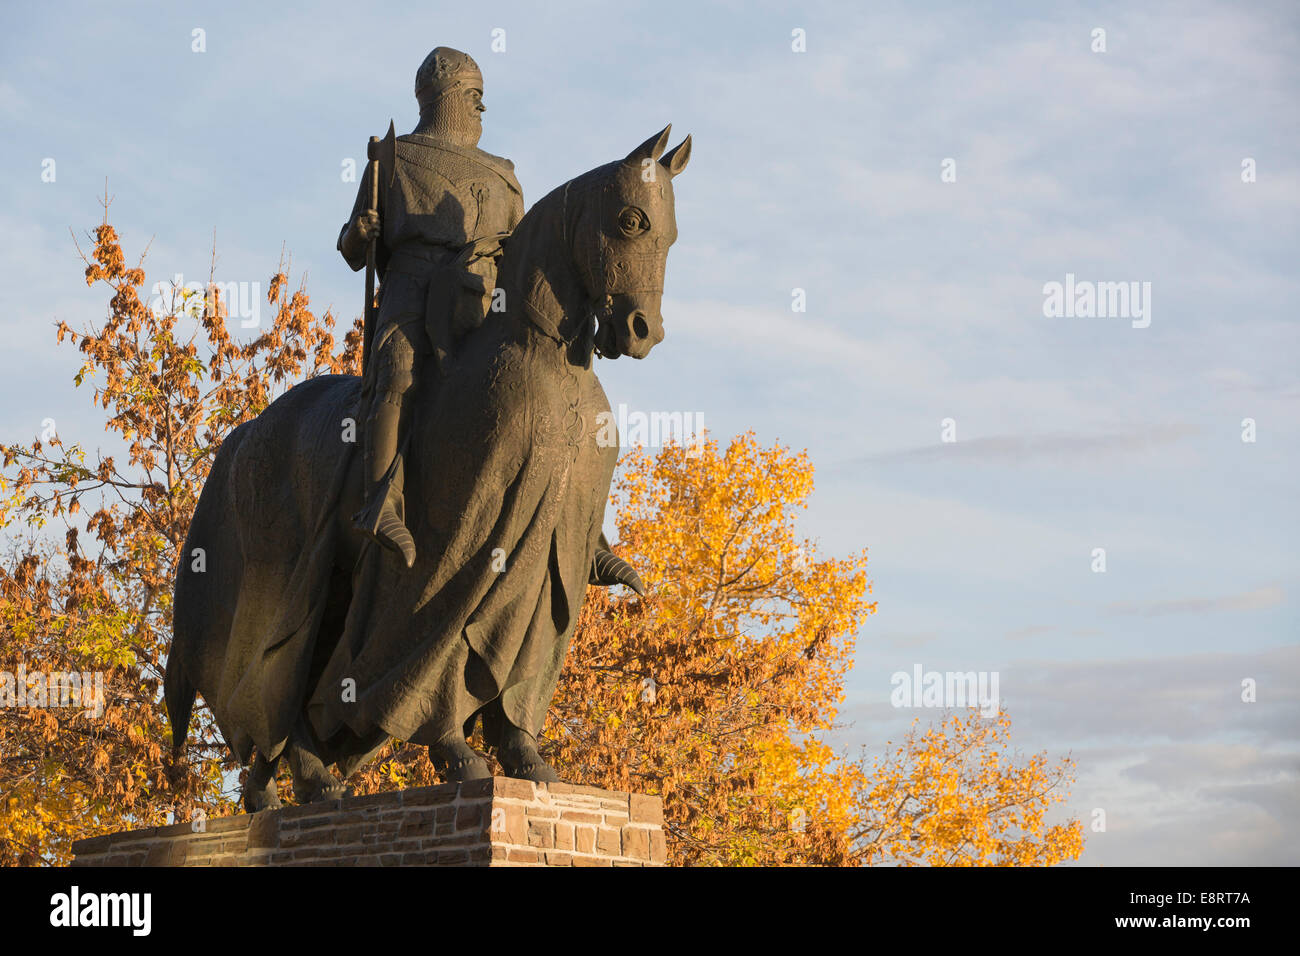 Bronzestatue von Robert dem Bruce König der Schotten zu Pferd, die an die  Schlacht von Bannockburn erinnert. Sowohl Mann als auch Pferd tragen eine  Ganzkörperpanzerung Stockfotografie - Alamy